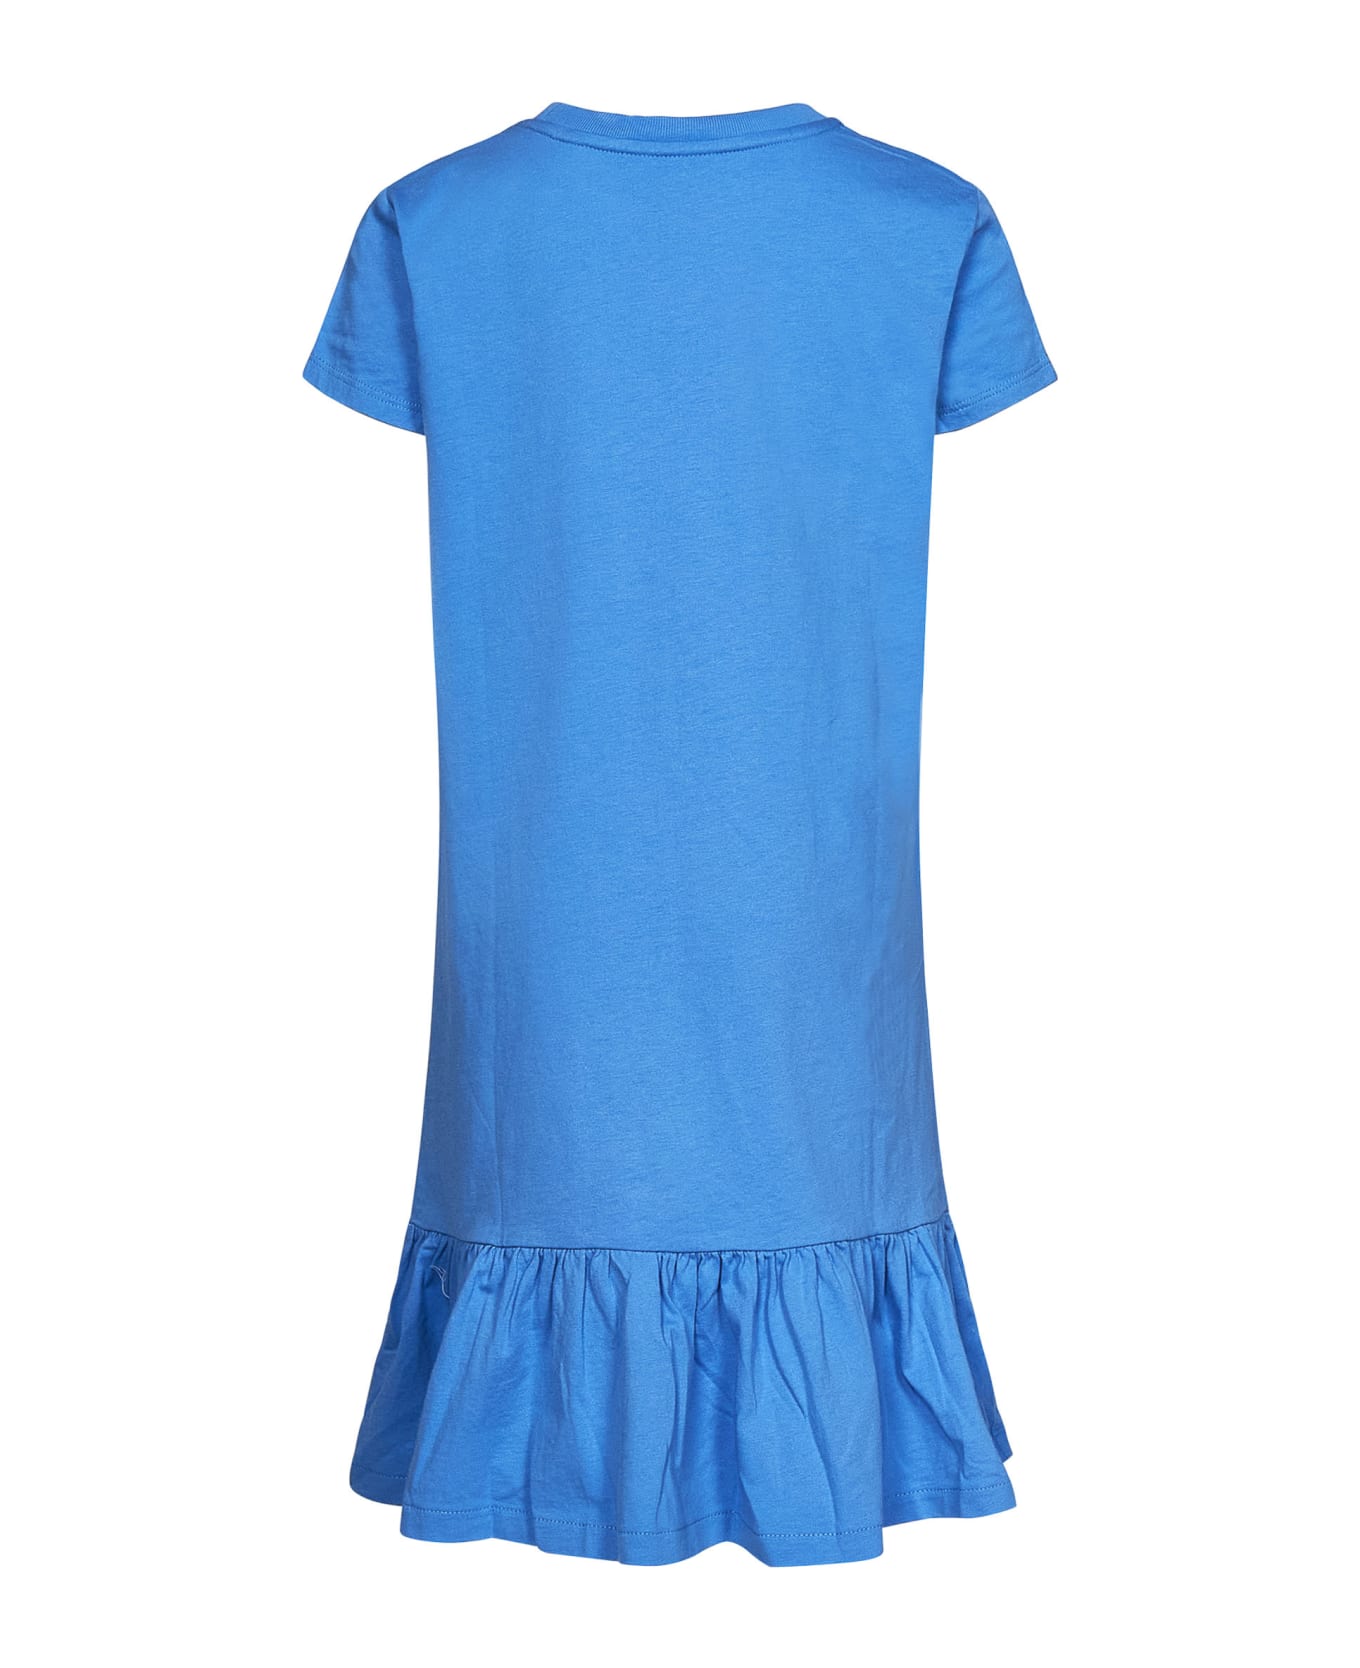 Polo Ralph Lauren Dress - Light blue